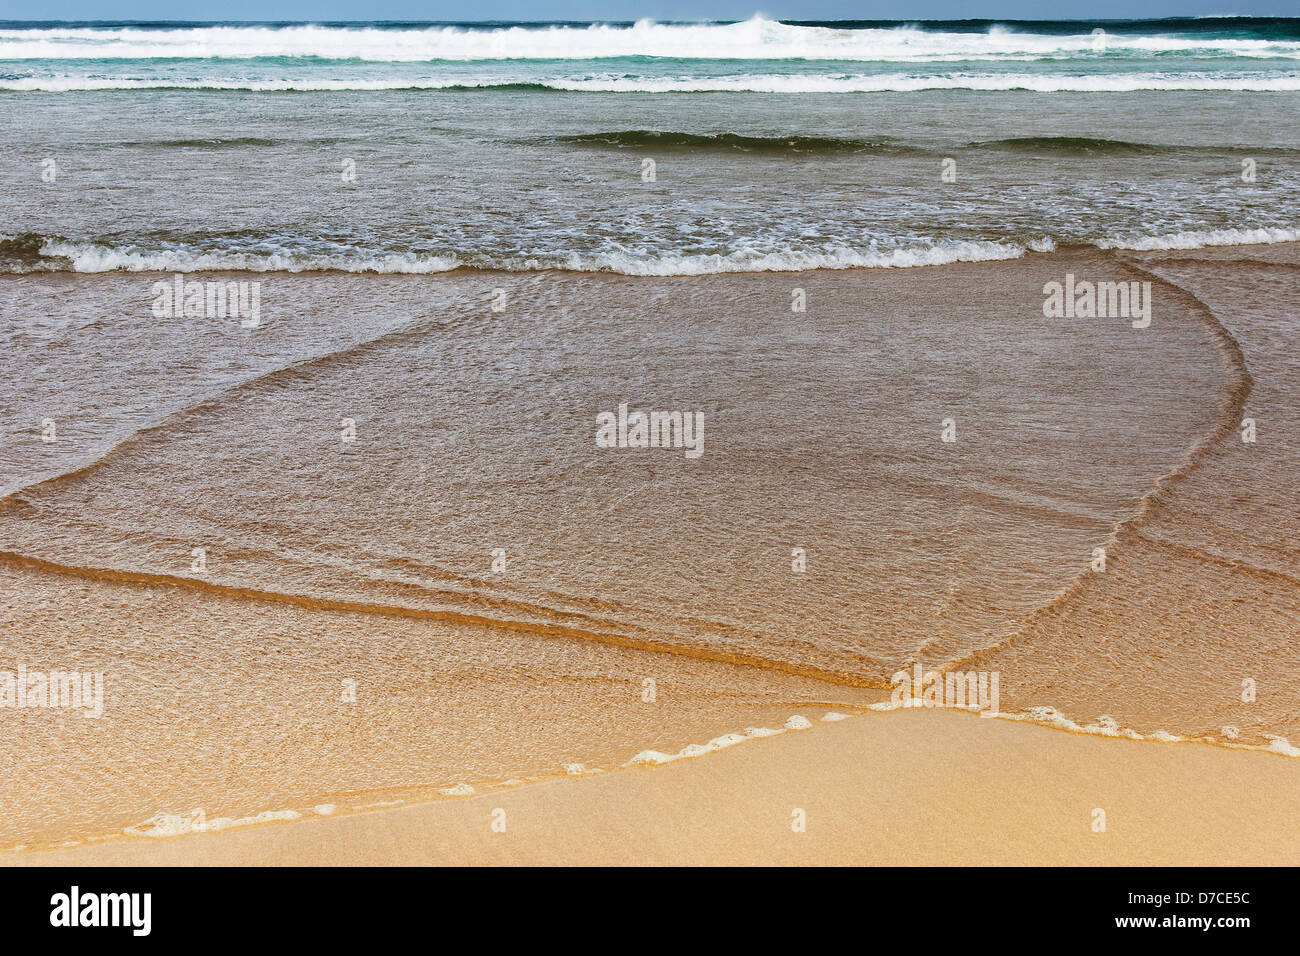 Dettaglio della sabbia e acqua di mare sulla spiaggia Foto Stock